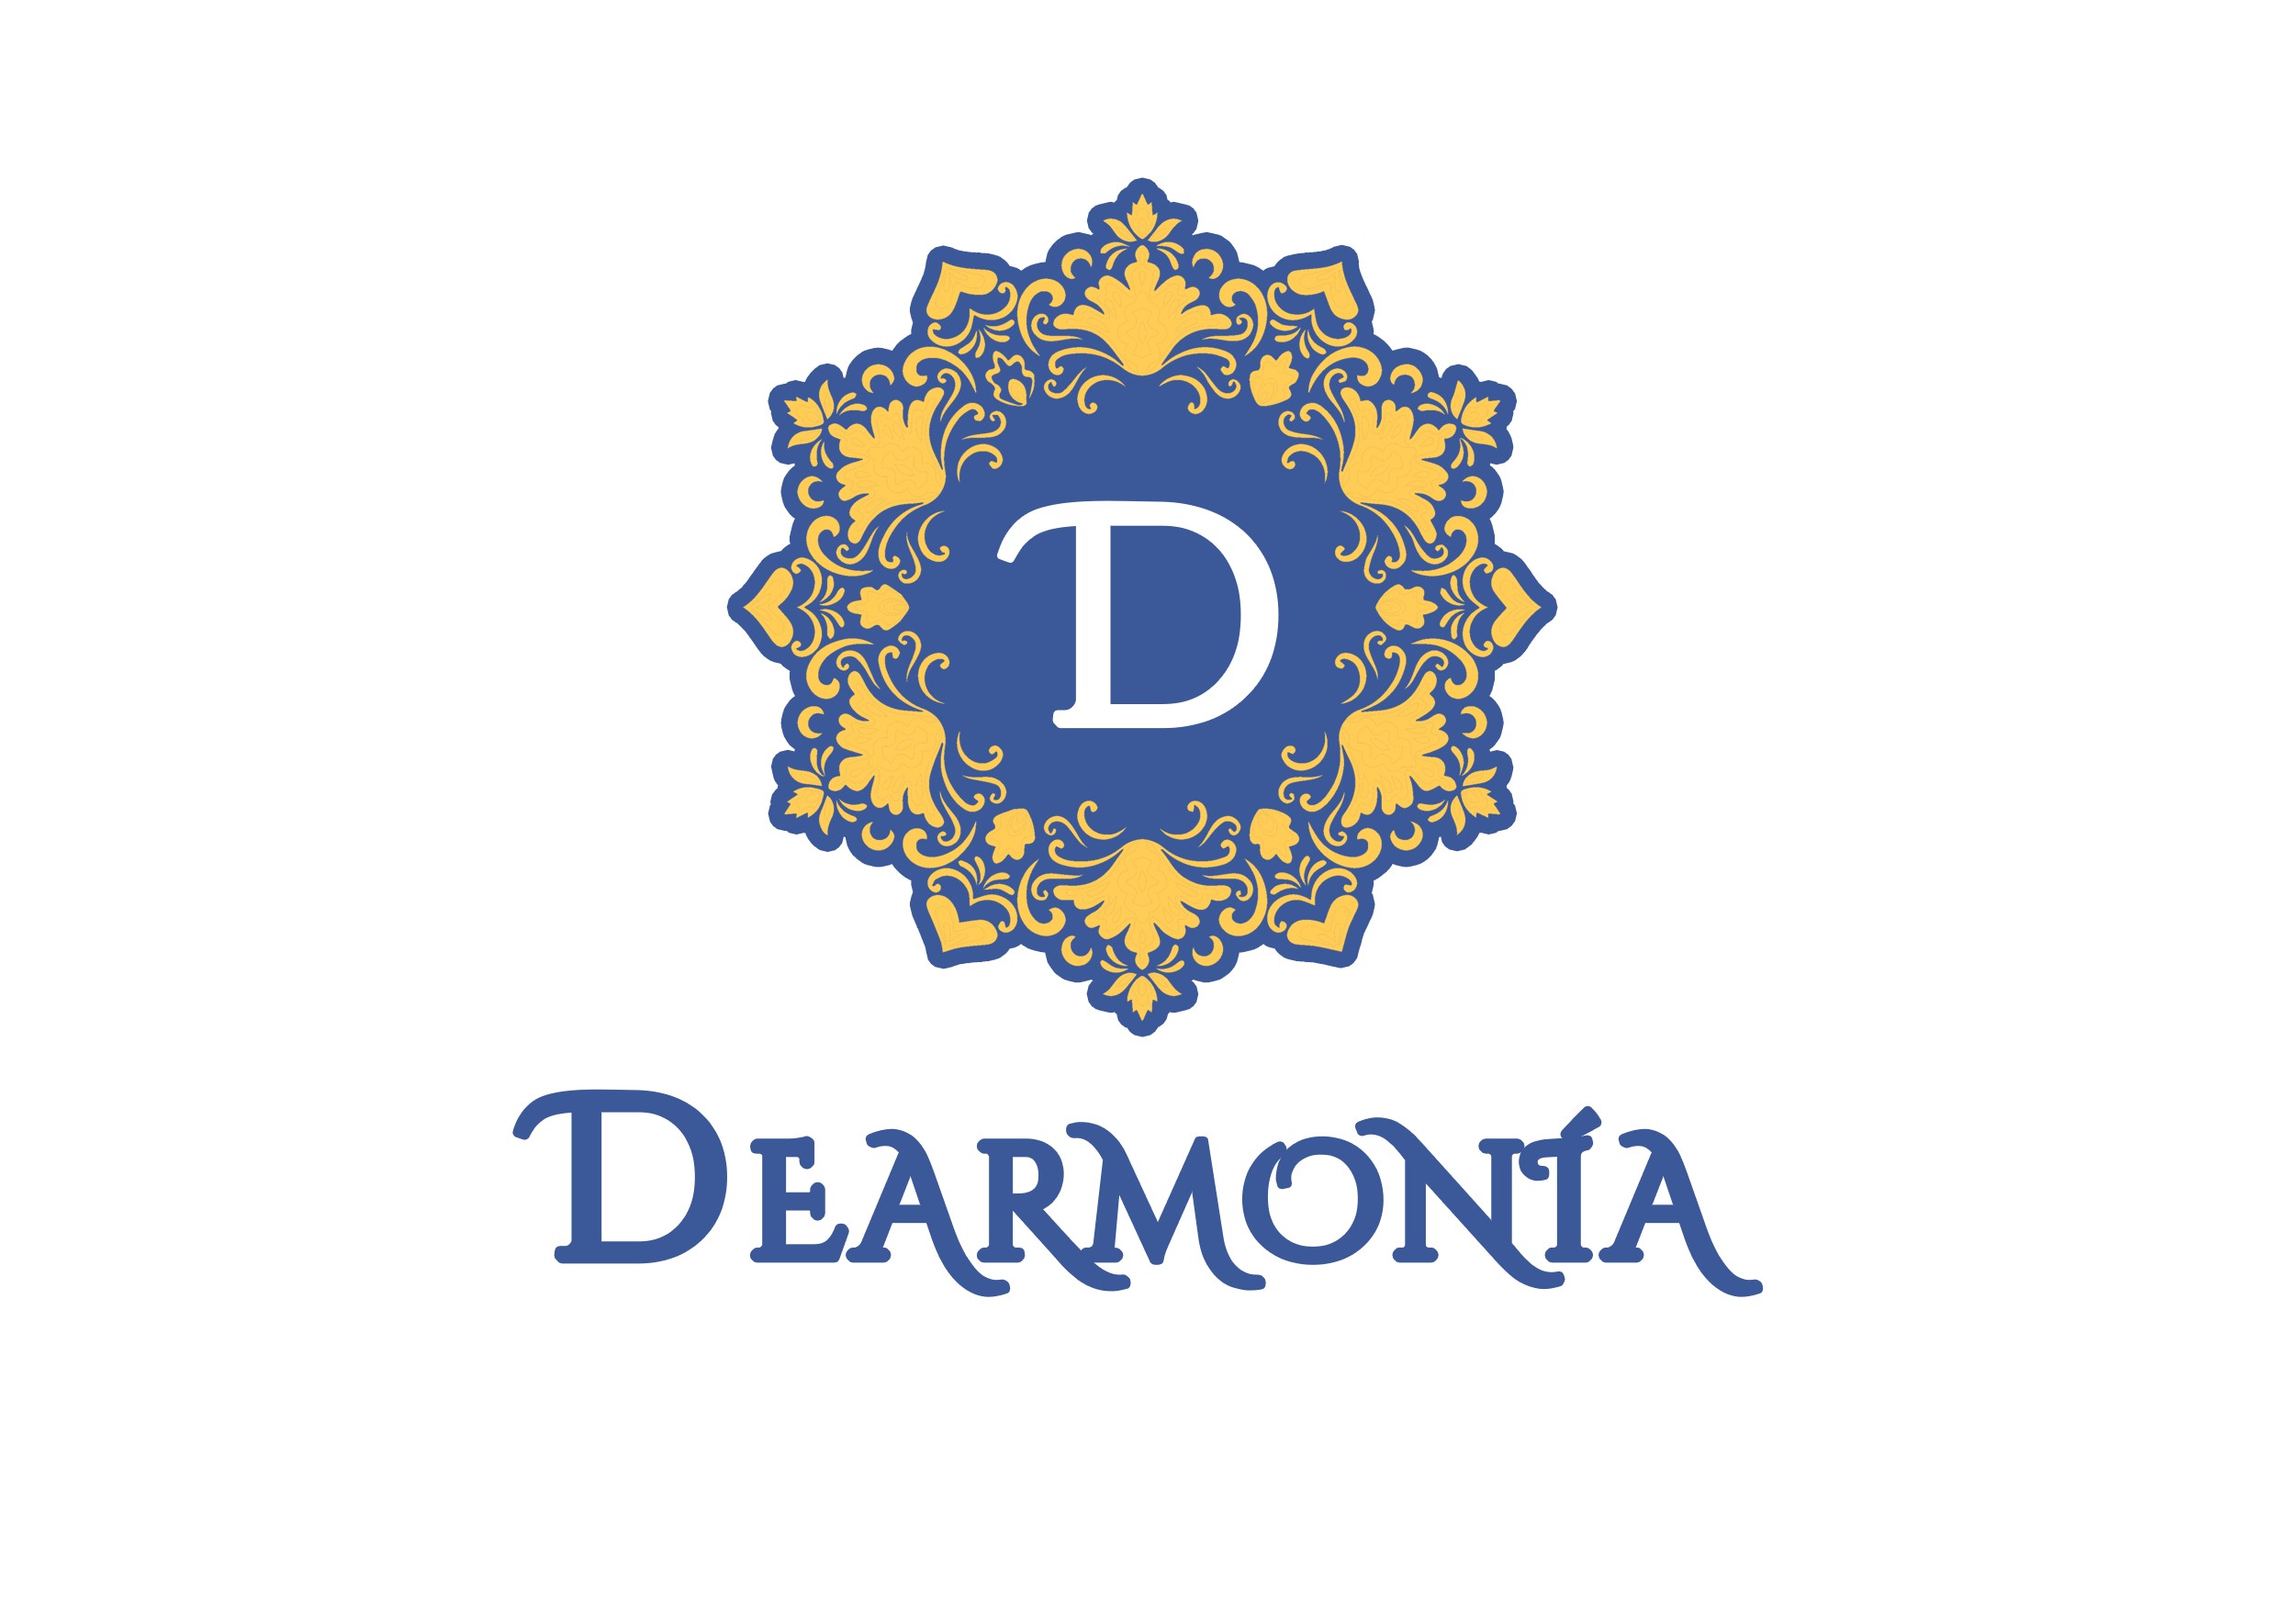 Dearmonia